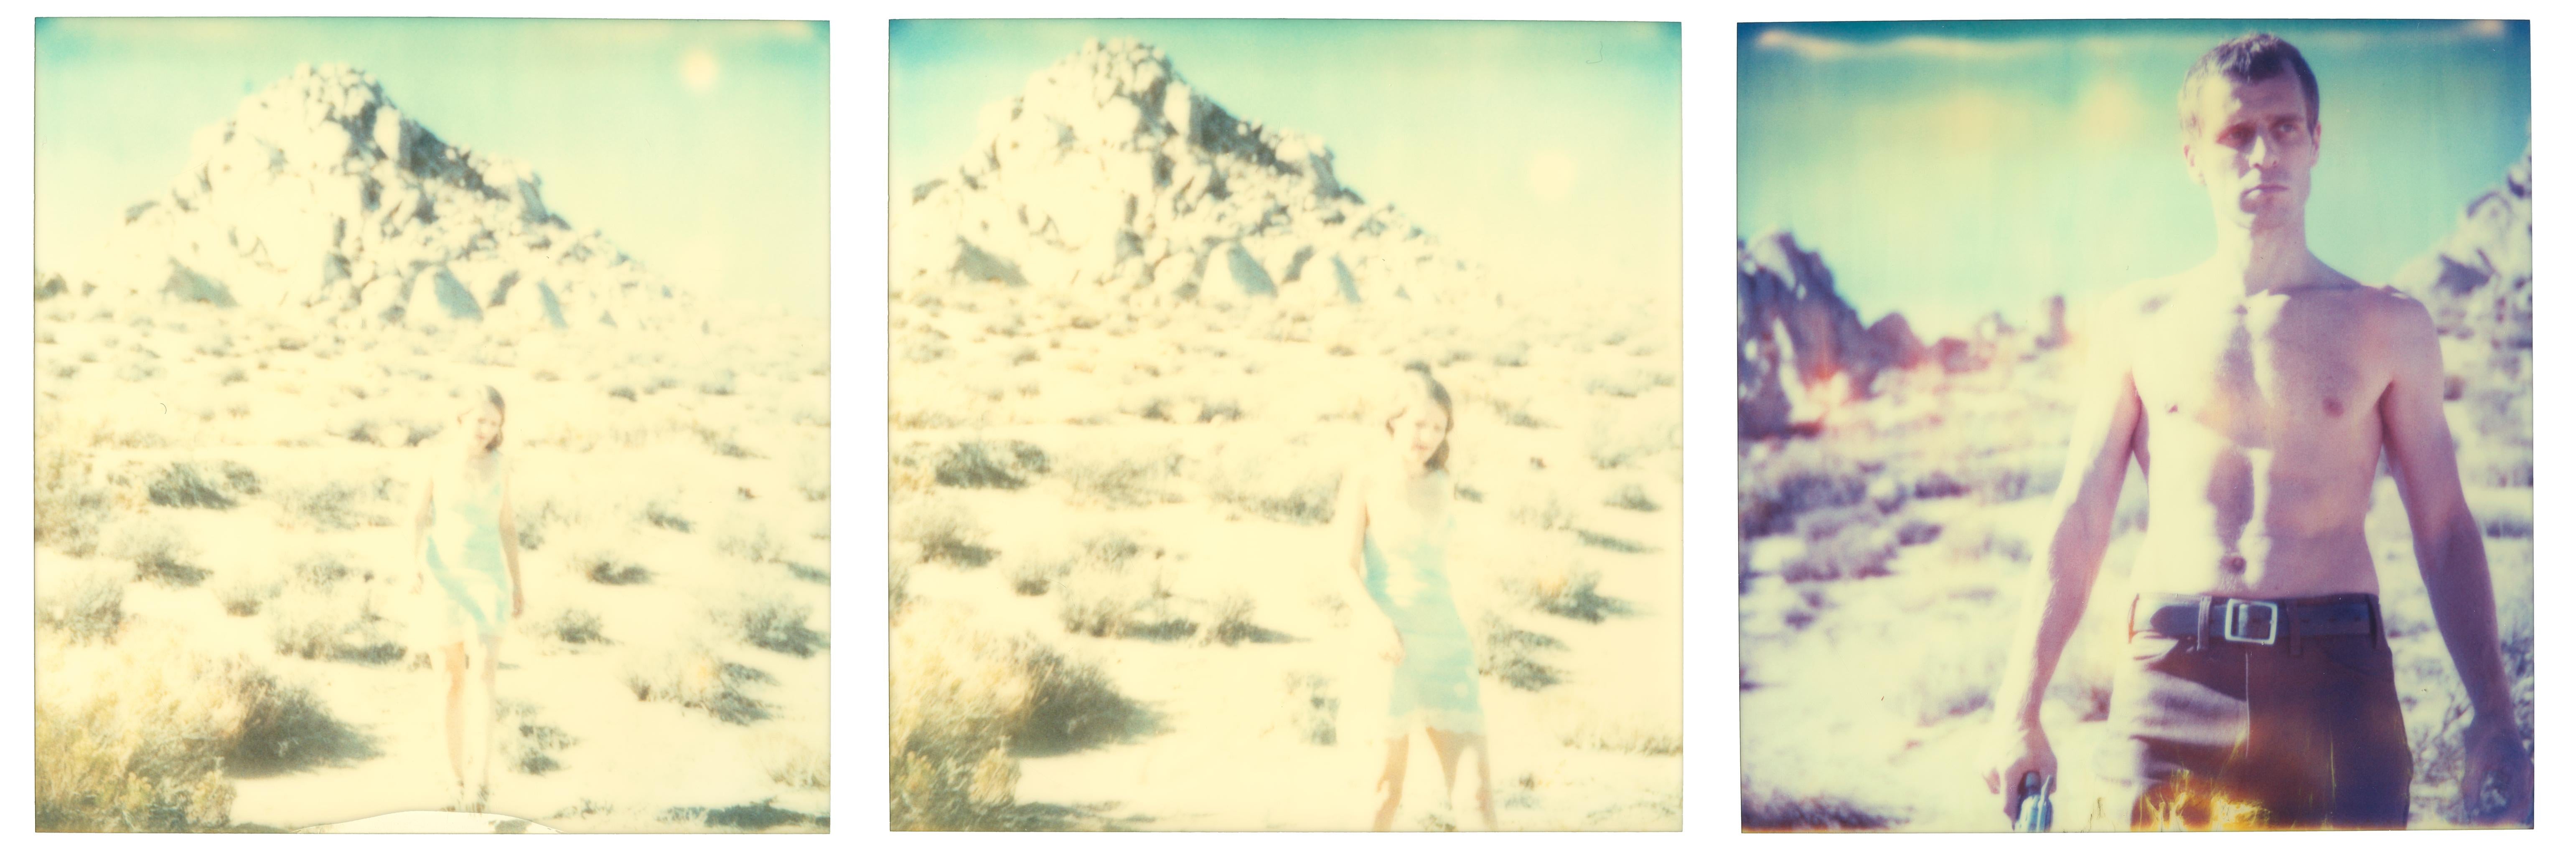 Figurative Photograph Stefanie Schneider - Aimless (Wastelands), triptyque, analogique - Polaroid, XXIe siècle, couleur